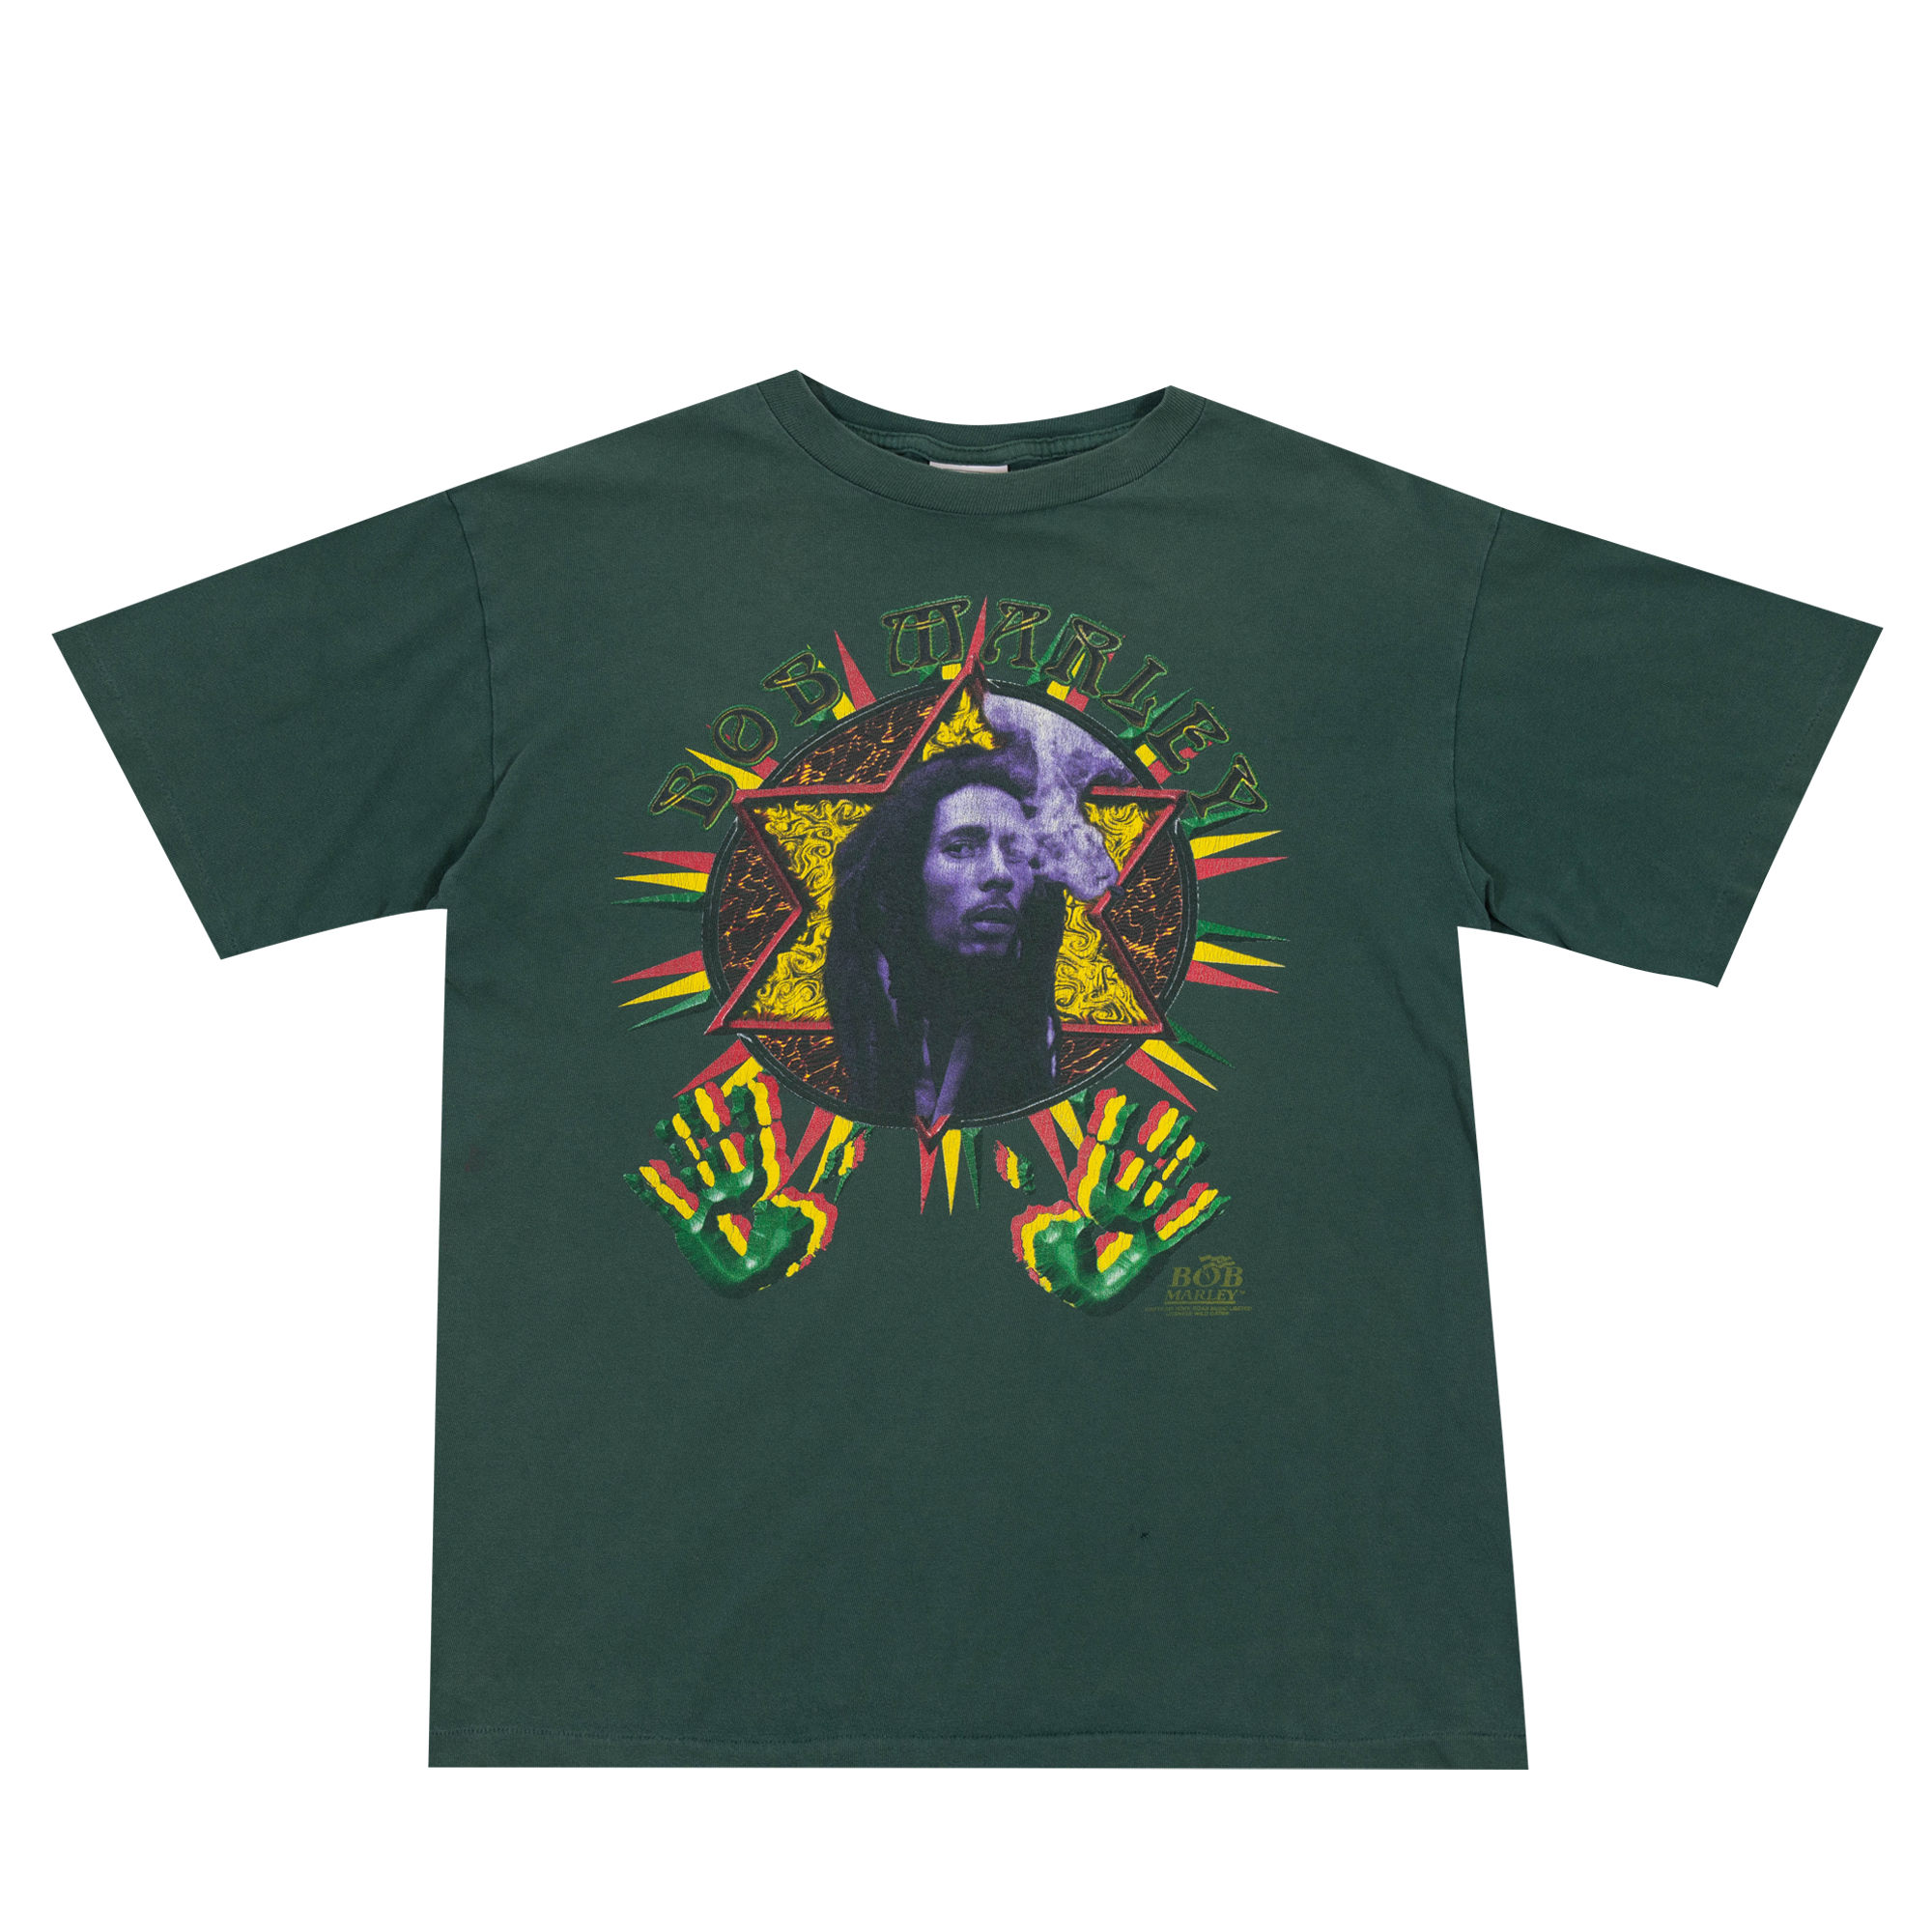 Bob Marley "Buffalo Soldier" 90's Wild Oats Tee Green-PLUS